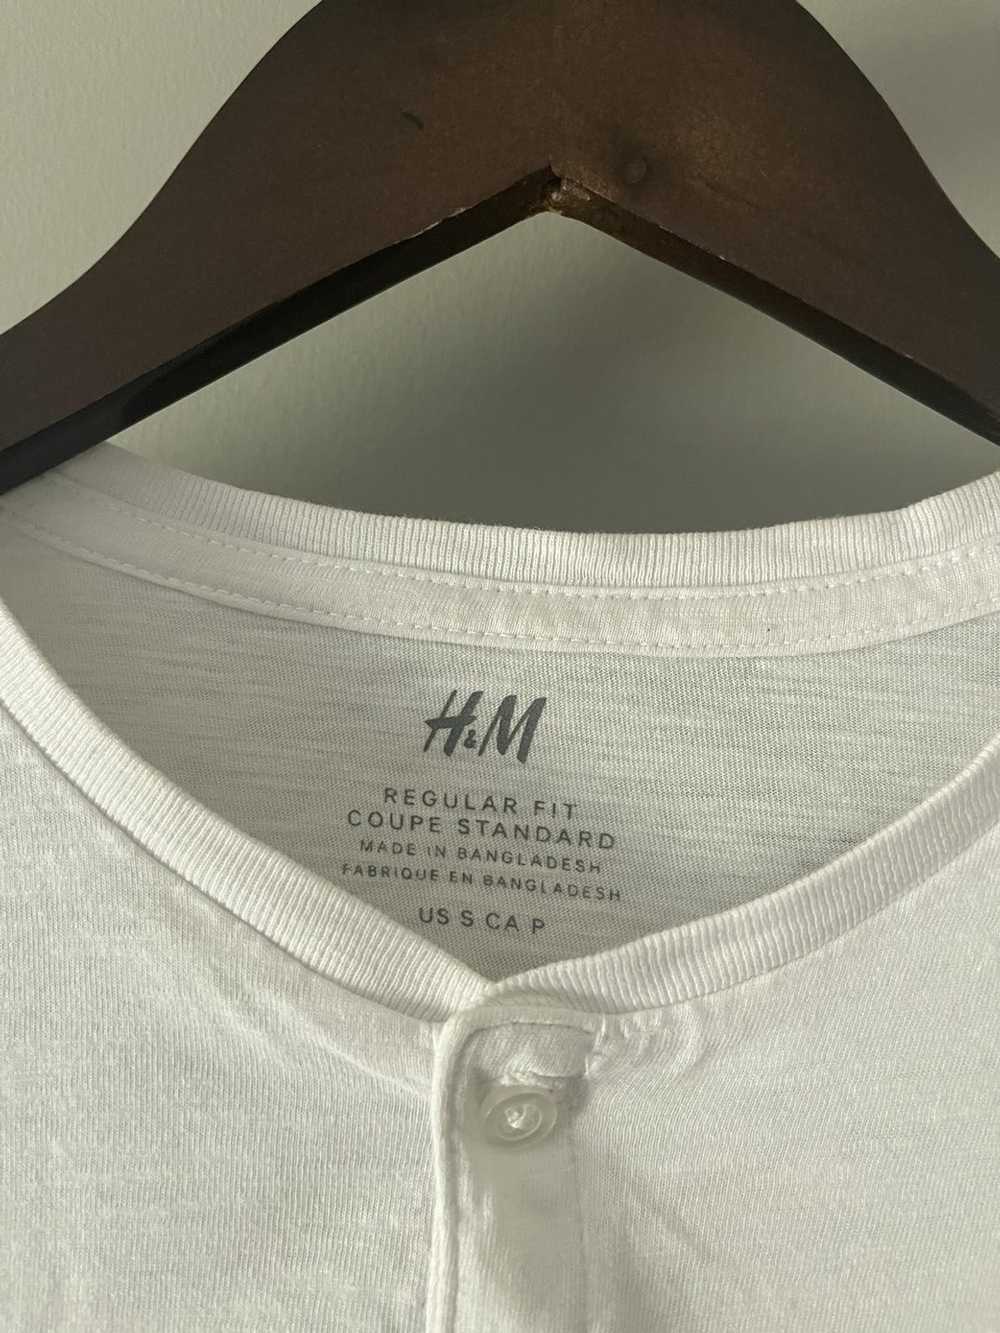 H&M H&M Man Basic White Tee - image 2